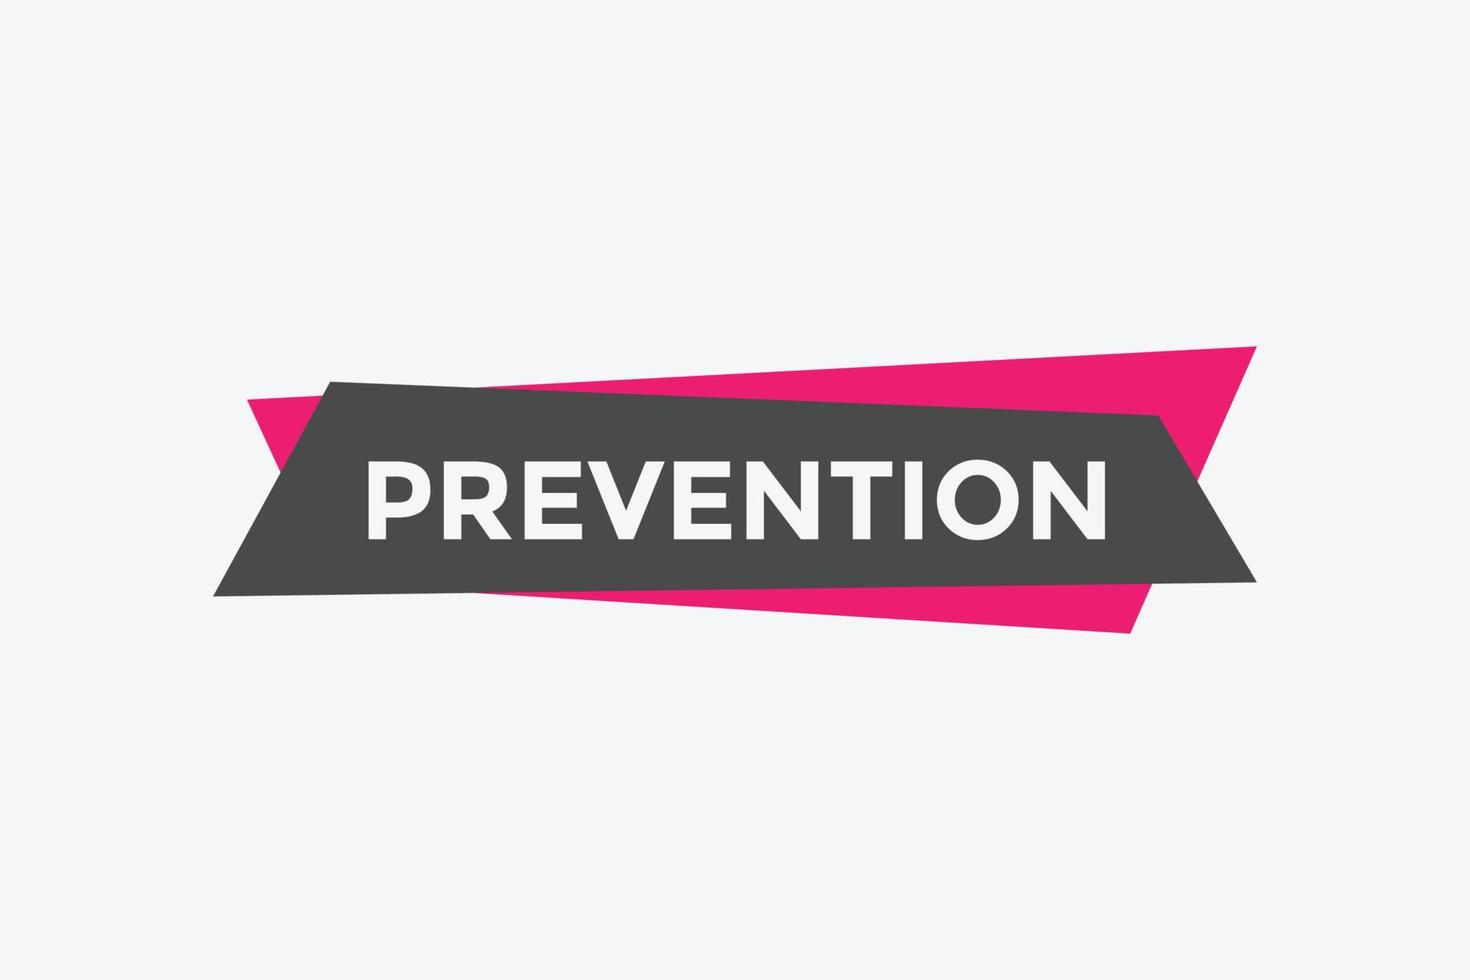 botón de prevención. burbuja de diálogo. banner web colorido de prevención. ilustración vectorial vector